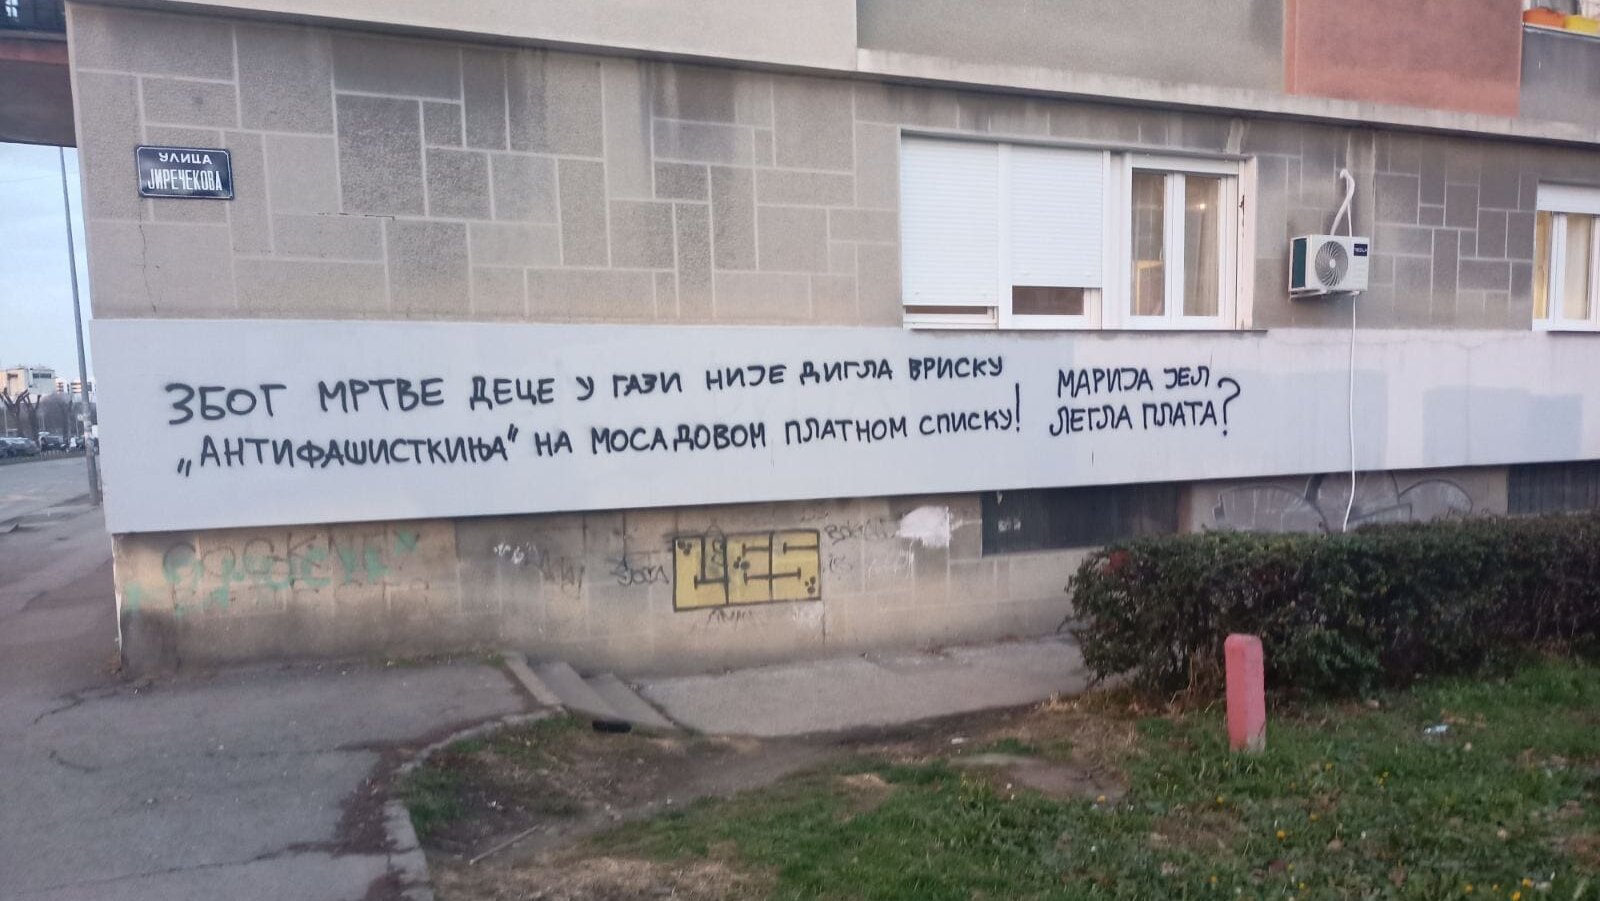 "Tužilaštvo kaže da nema elemenata krivičnog dela, nisu pretili da će da me ubiju": Marija Vasić nakon ispisanih grafita protiv nje u Novom Sadu 2